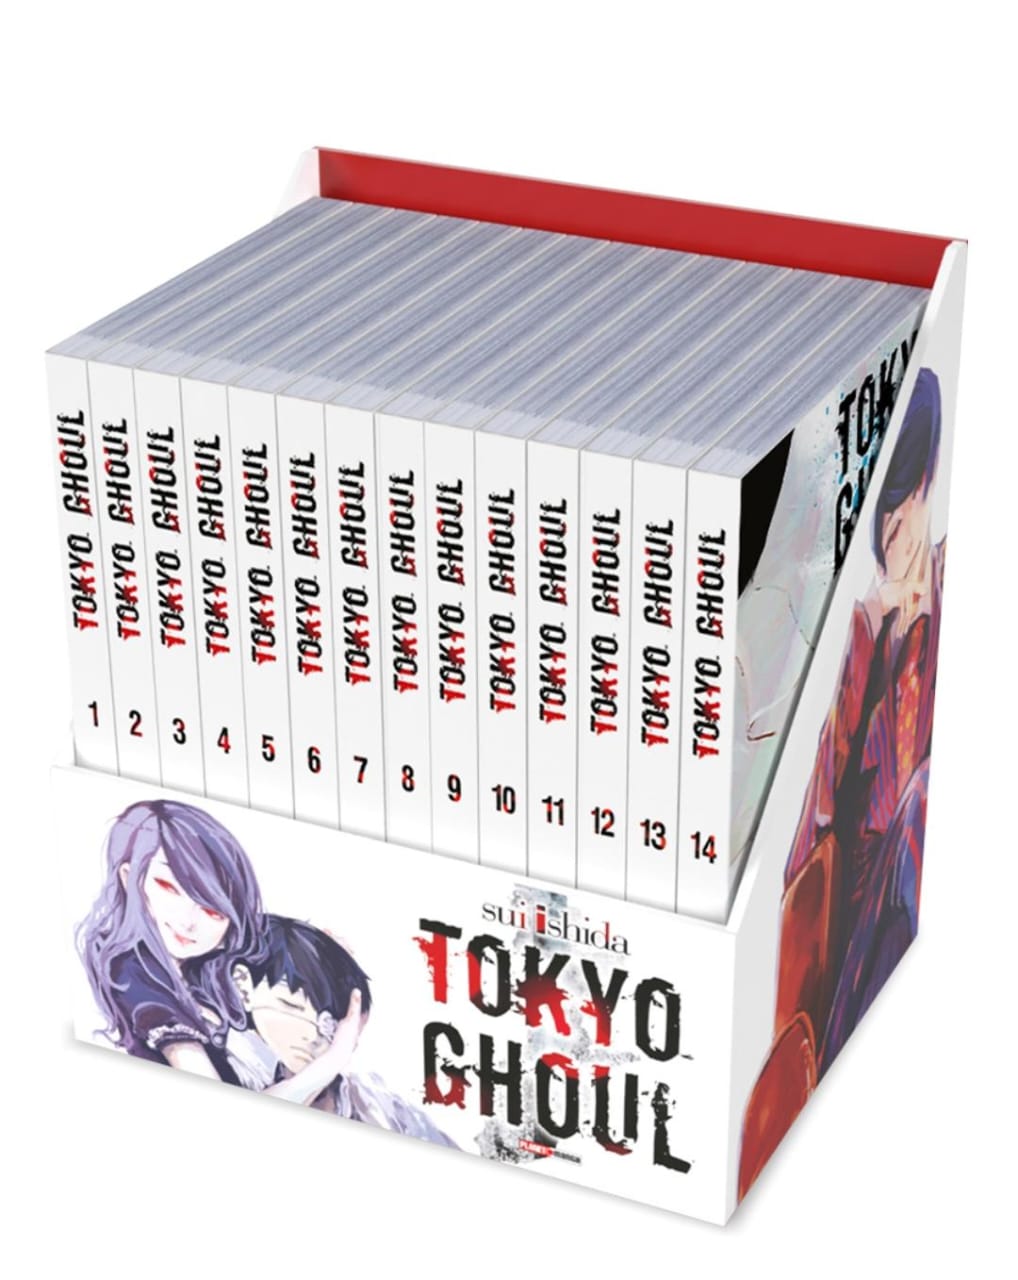 9 melhores animes para assistir se você ama Tokyo Ghoul